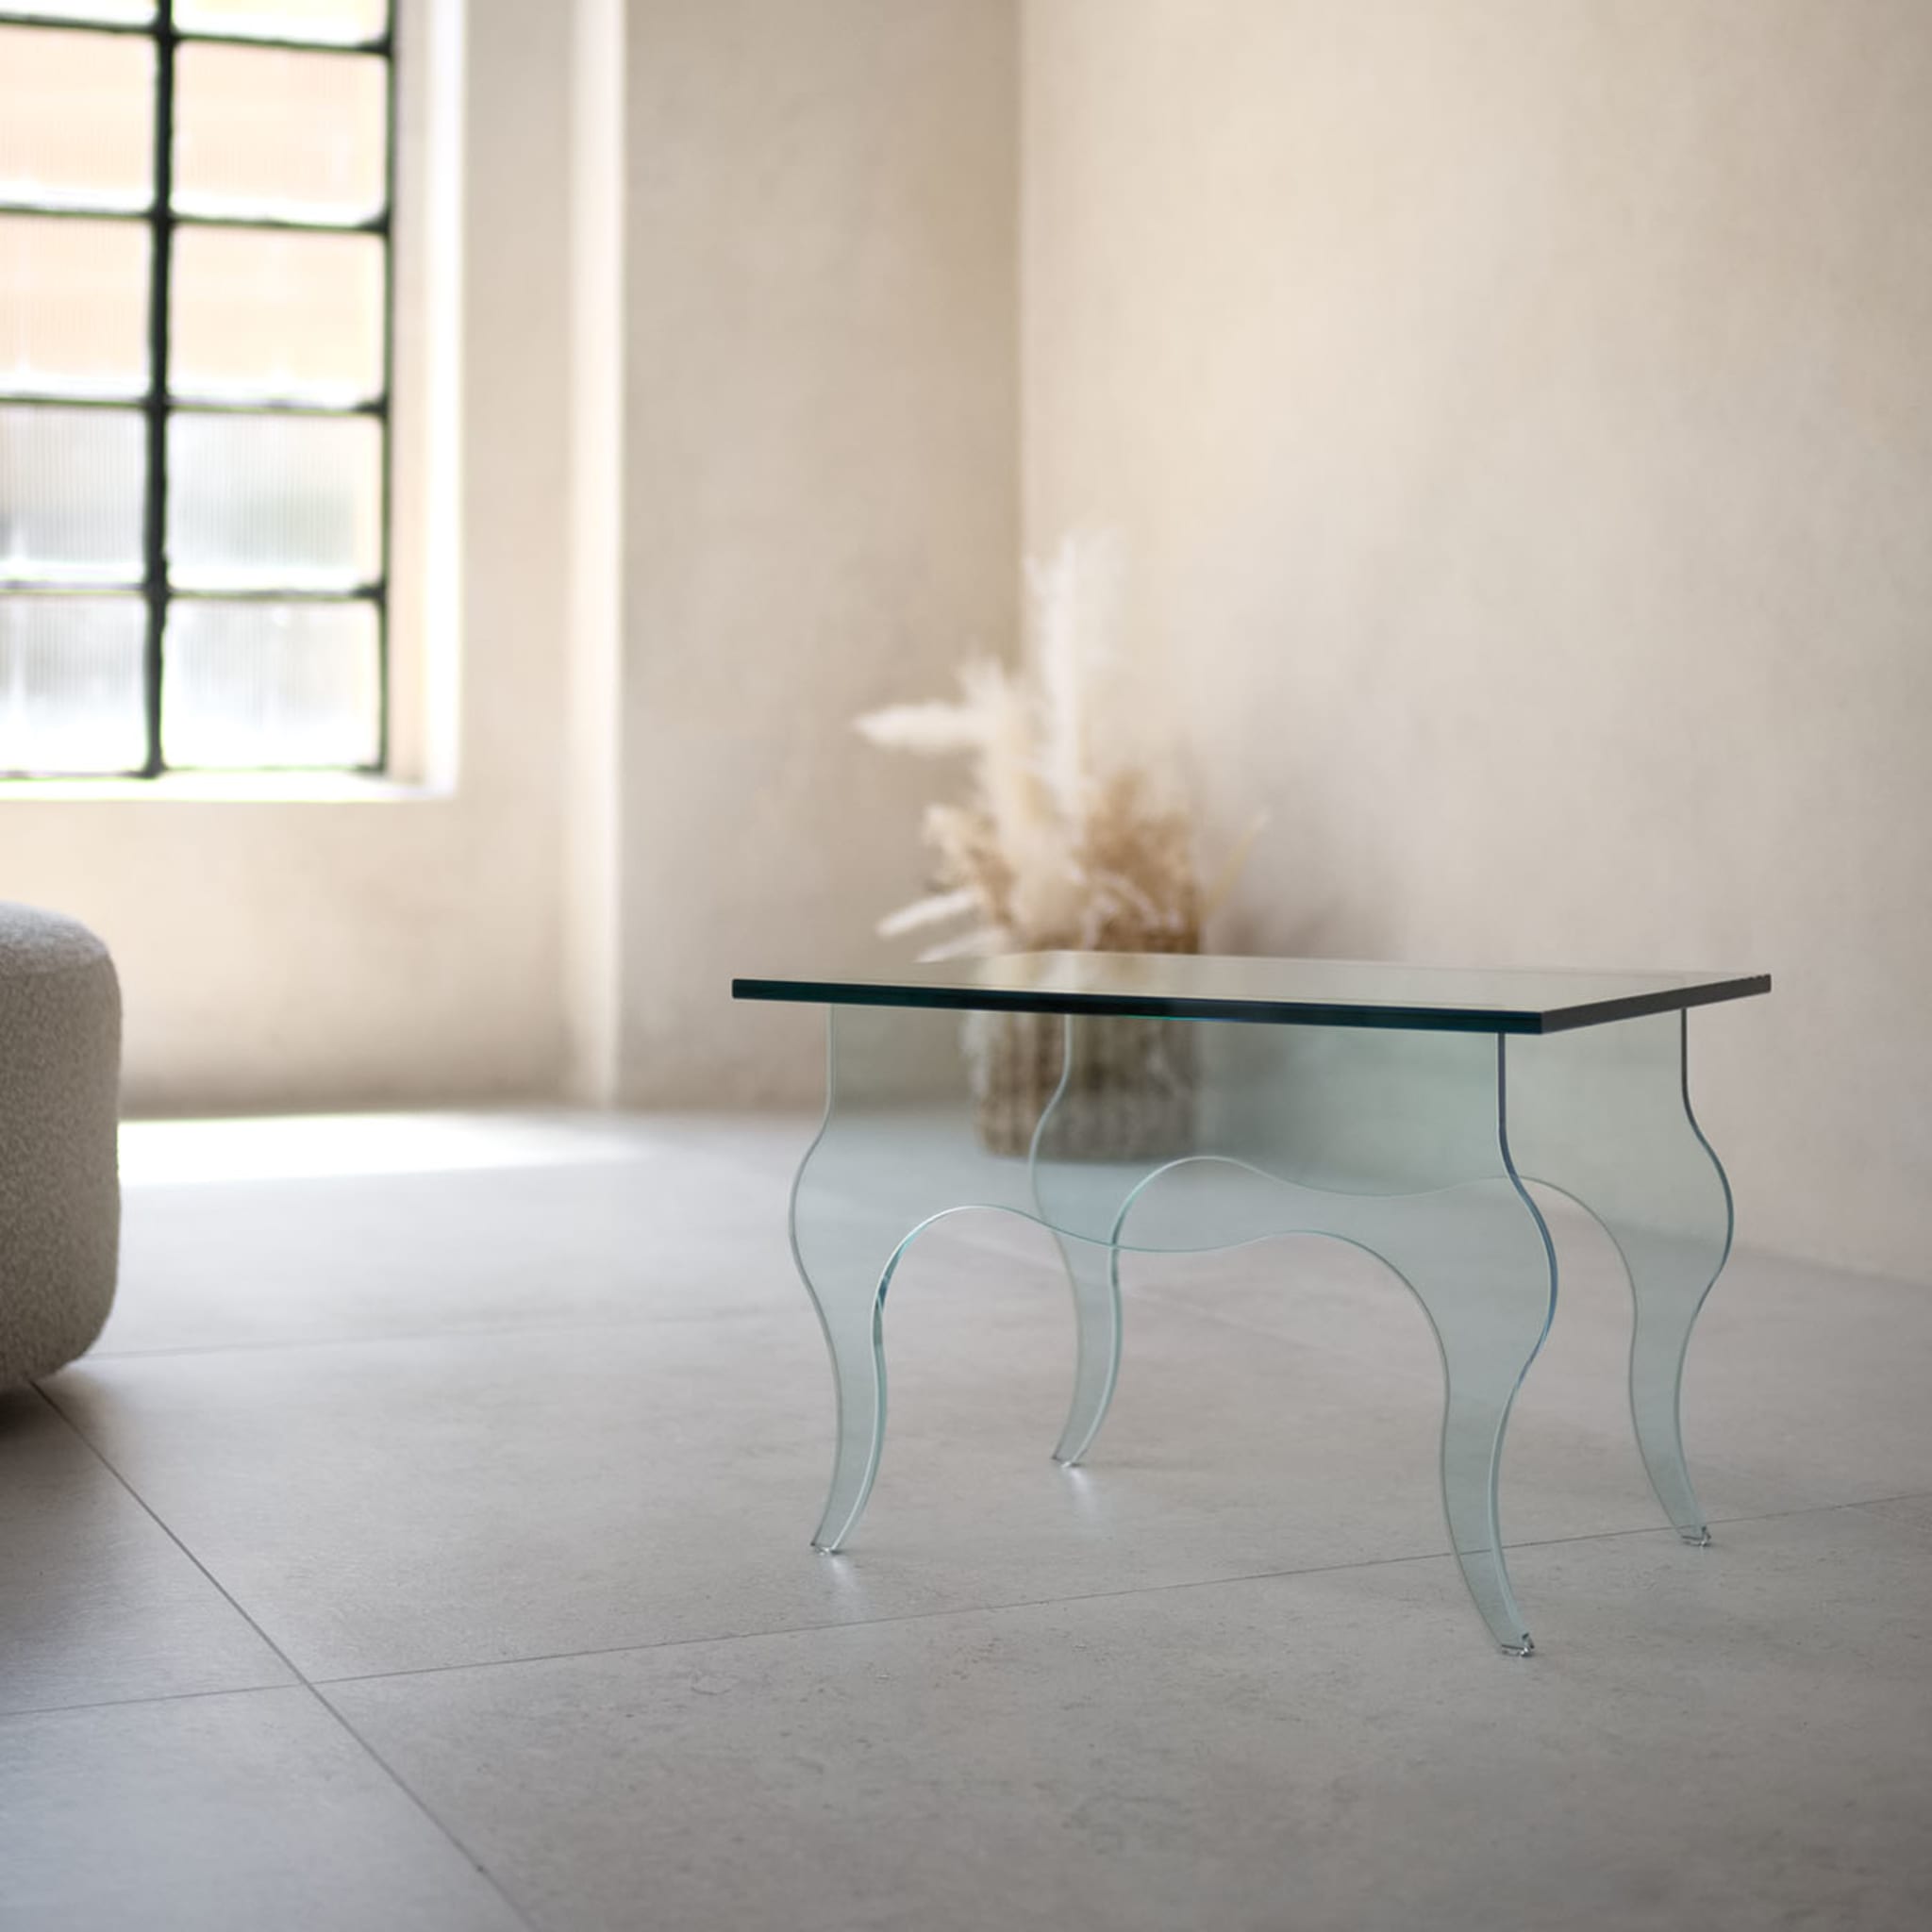 Edmondo Side Table by Andrea Petterini - Alternative view 1